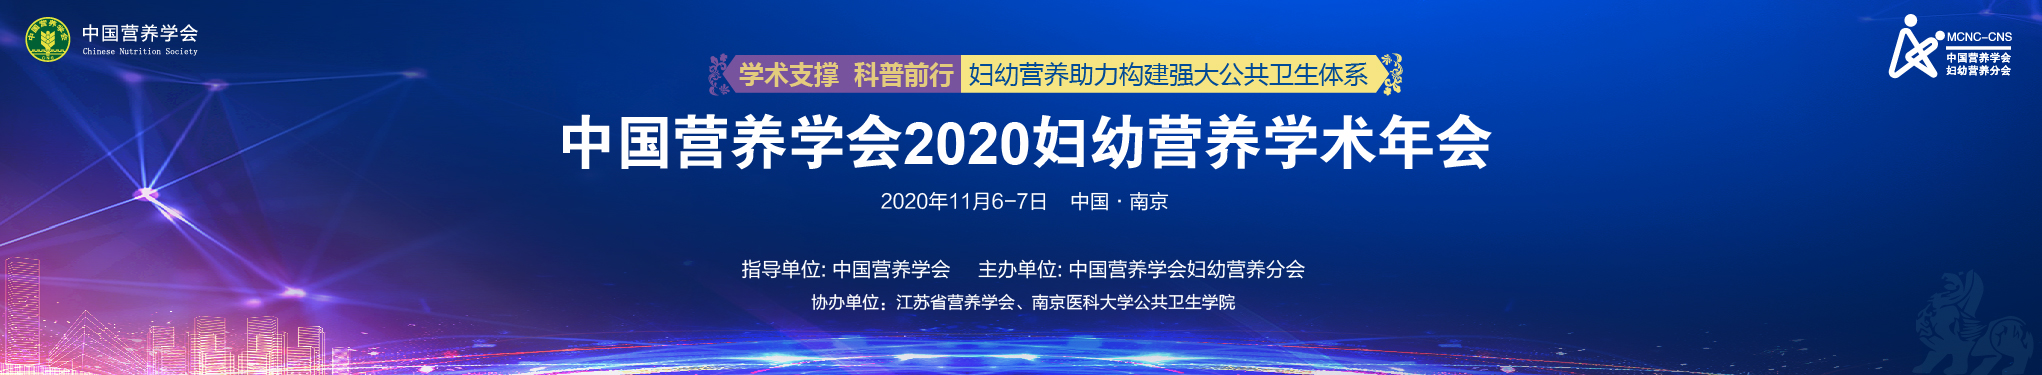 中国营养学会2020妇幼营养学术年会